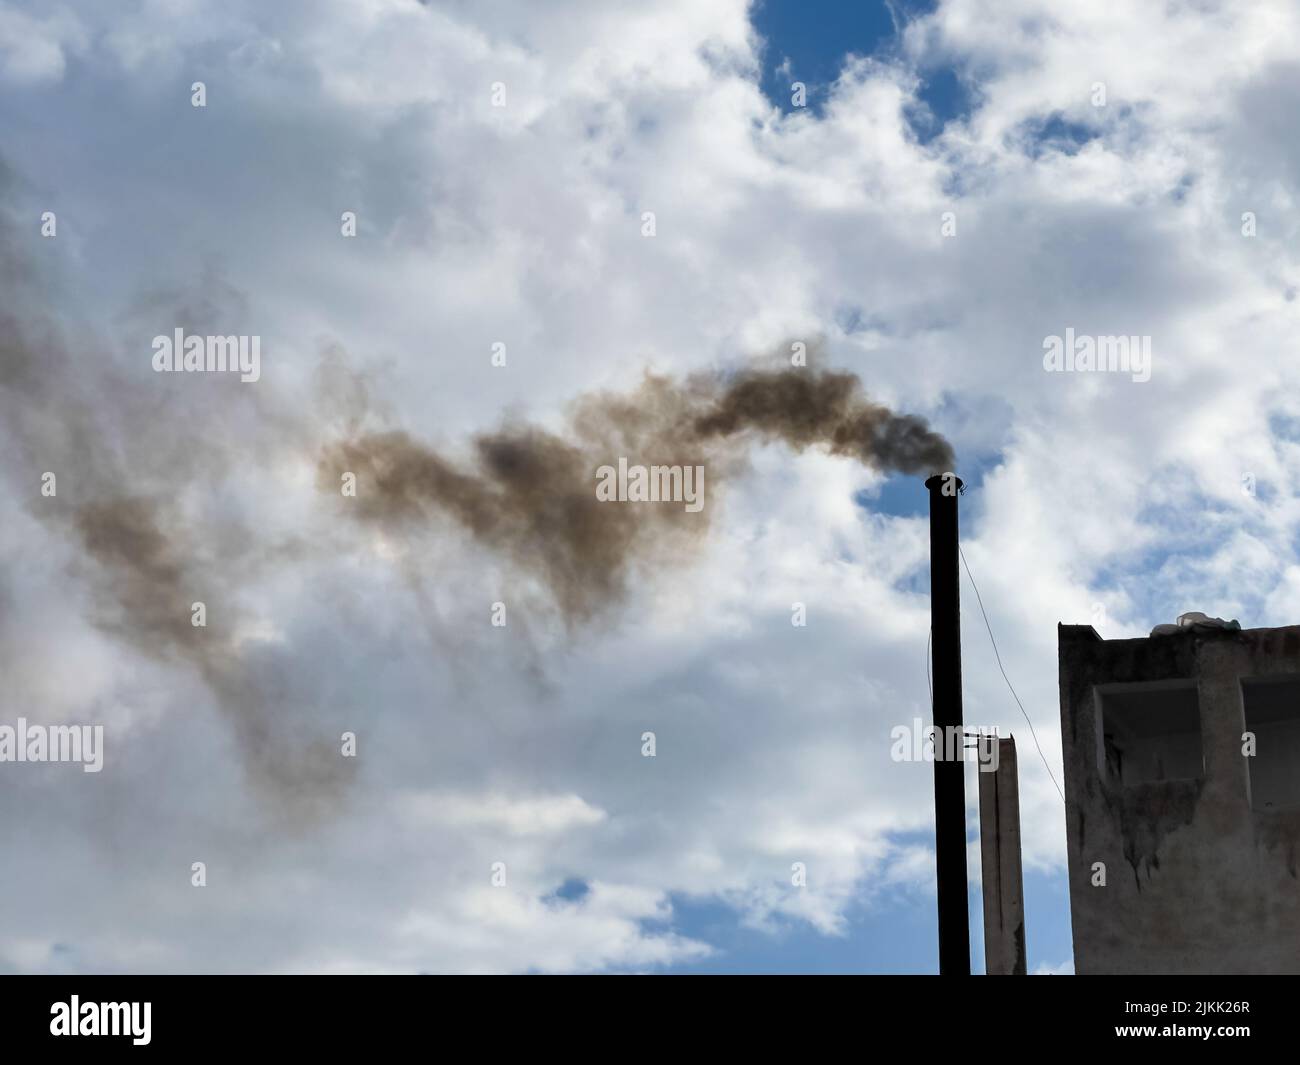 Rauch aus einer Pfeife auf dem Hintergrund eines bewölkten Himmels Stockfoto